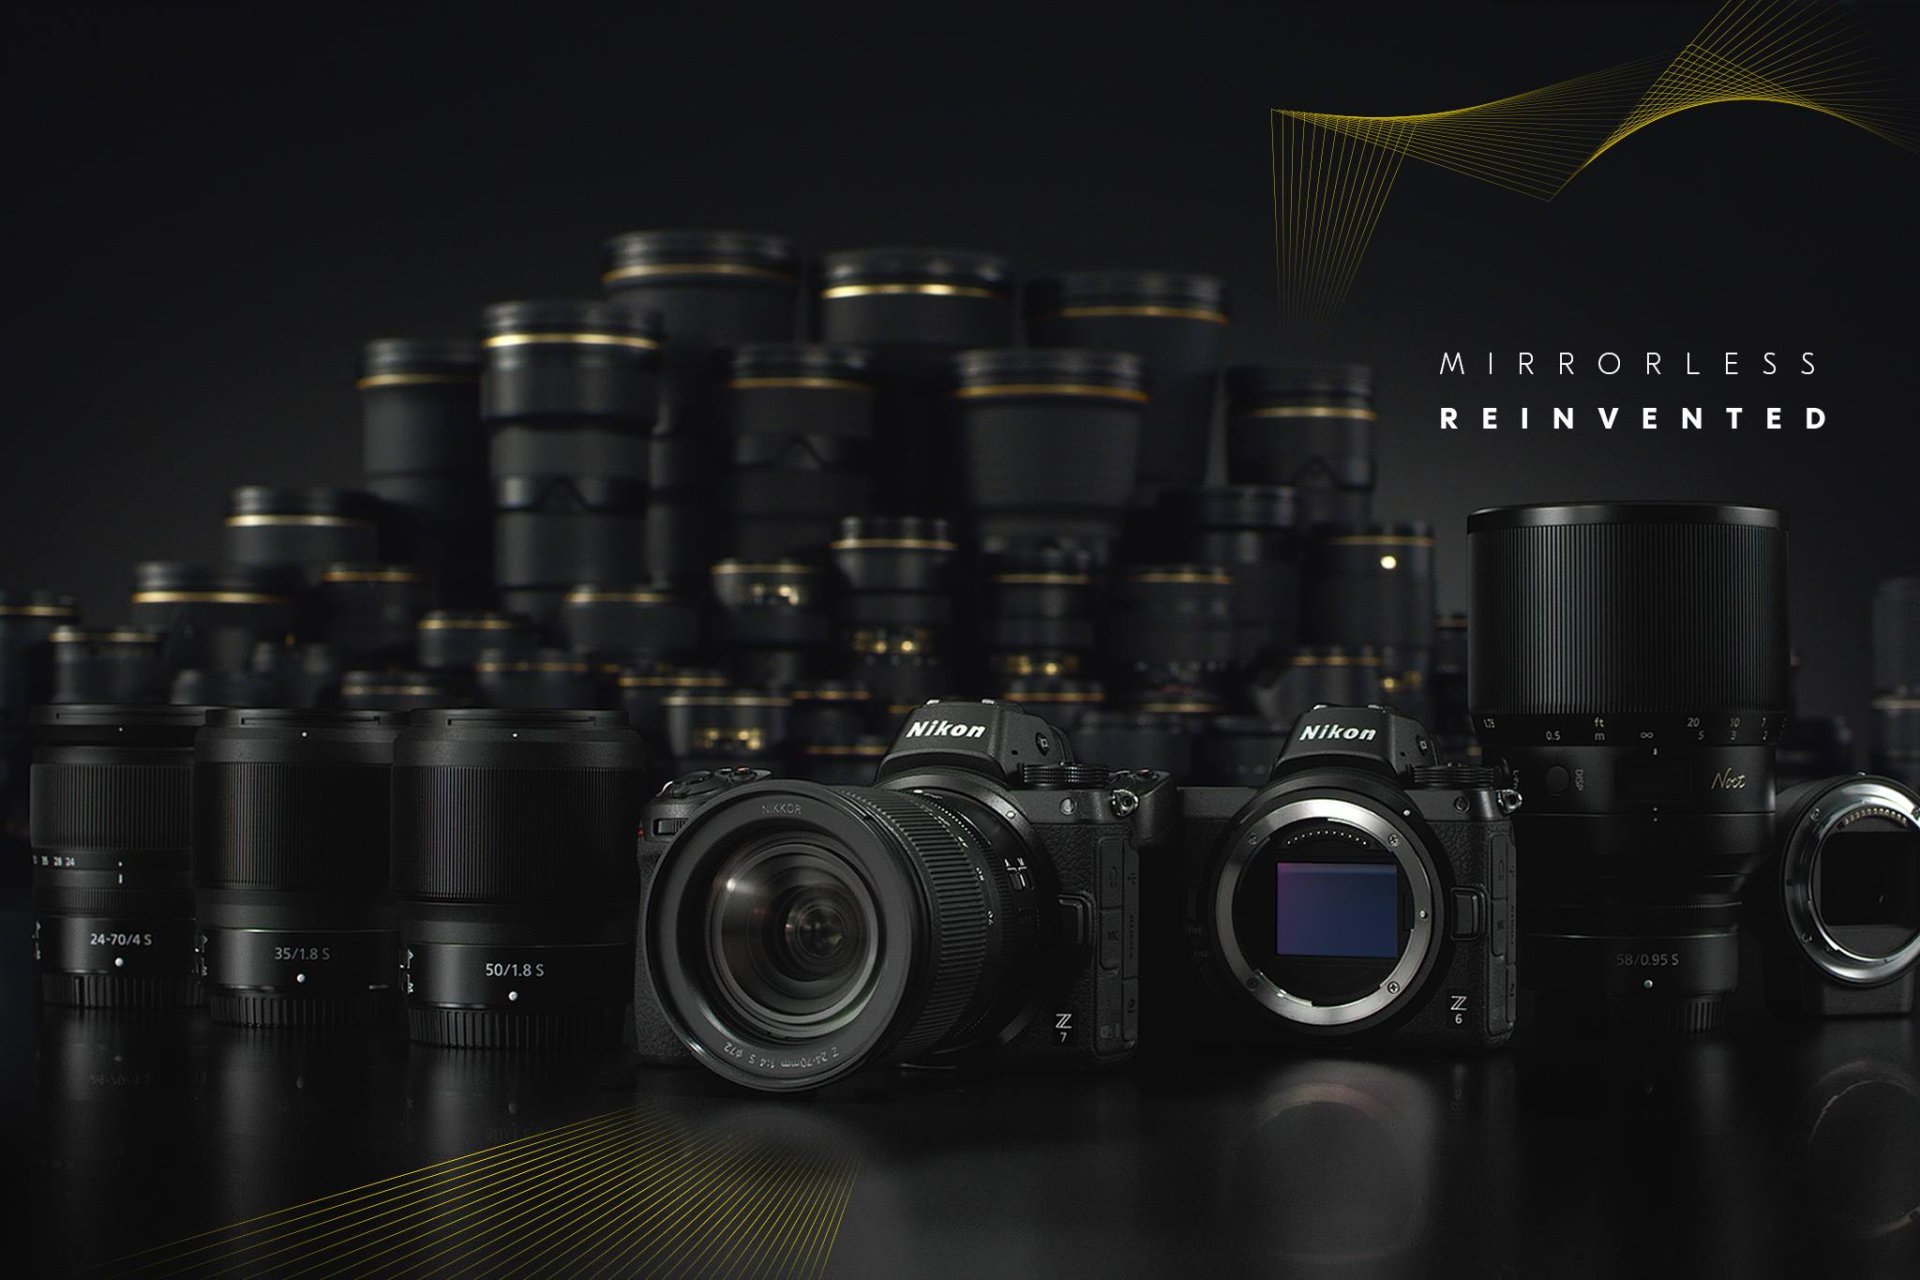 ลือหนัก Nikon เตรียมเปิดตัว Nikon Z5 พร้อมเลนส์อีก 3 ตัว 21 กรกฏาคมนี้